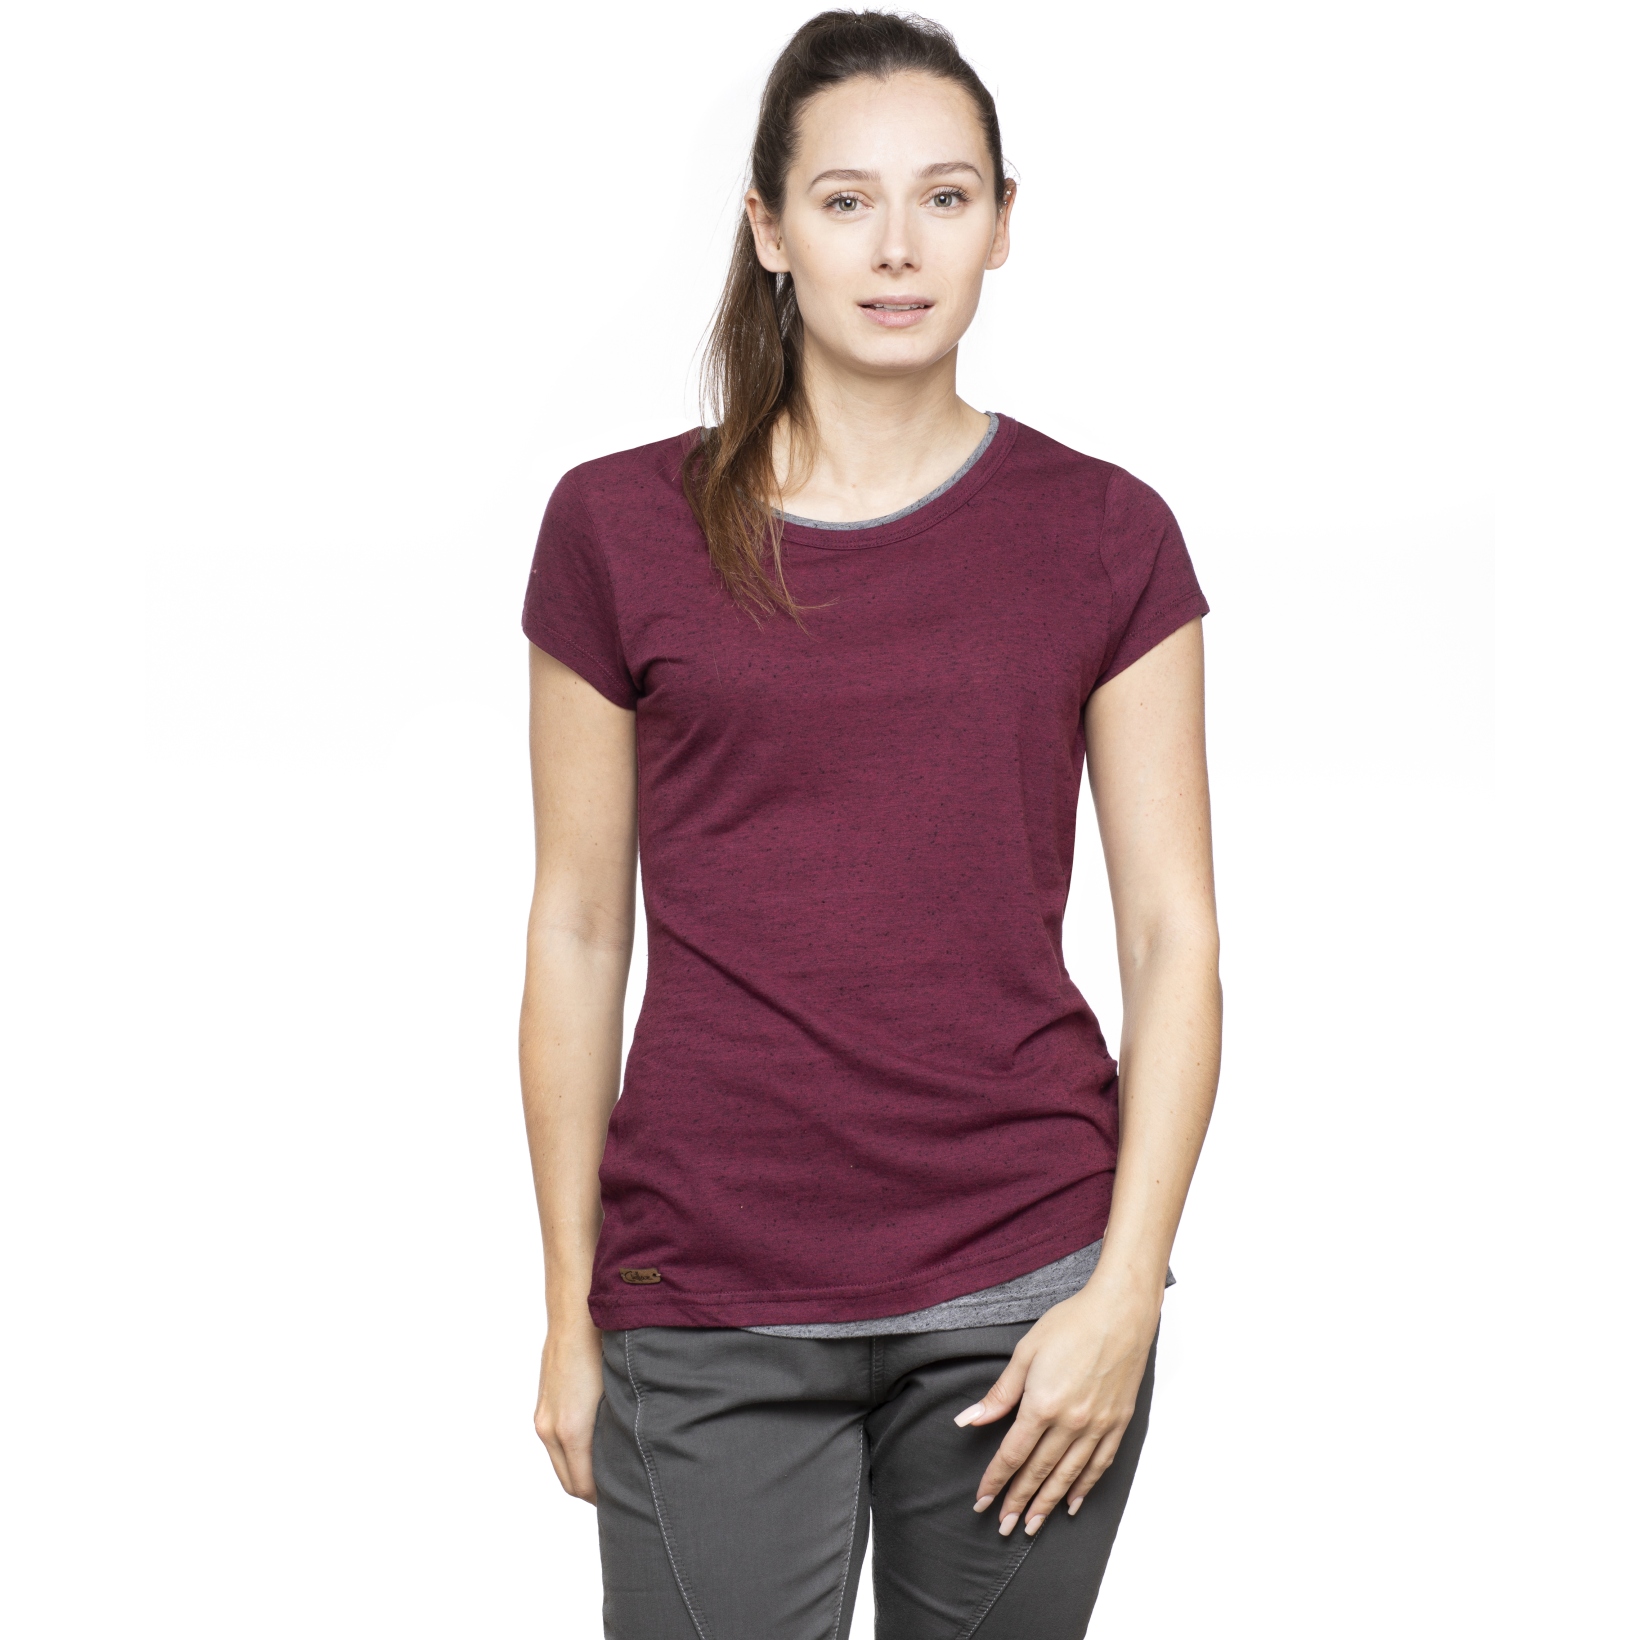 Produktbild von Chillaz Fancy T-Shirt Damen - dry rose melange